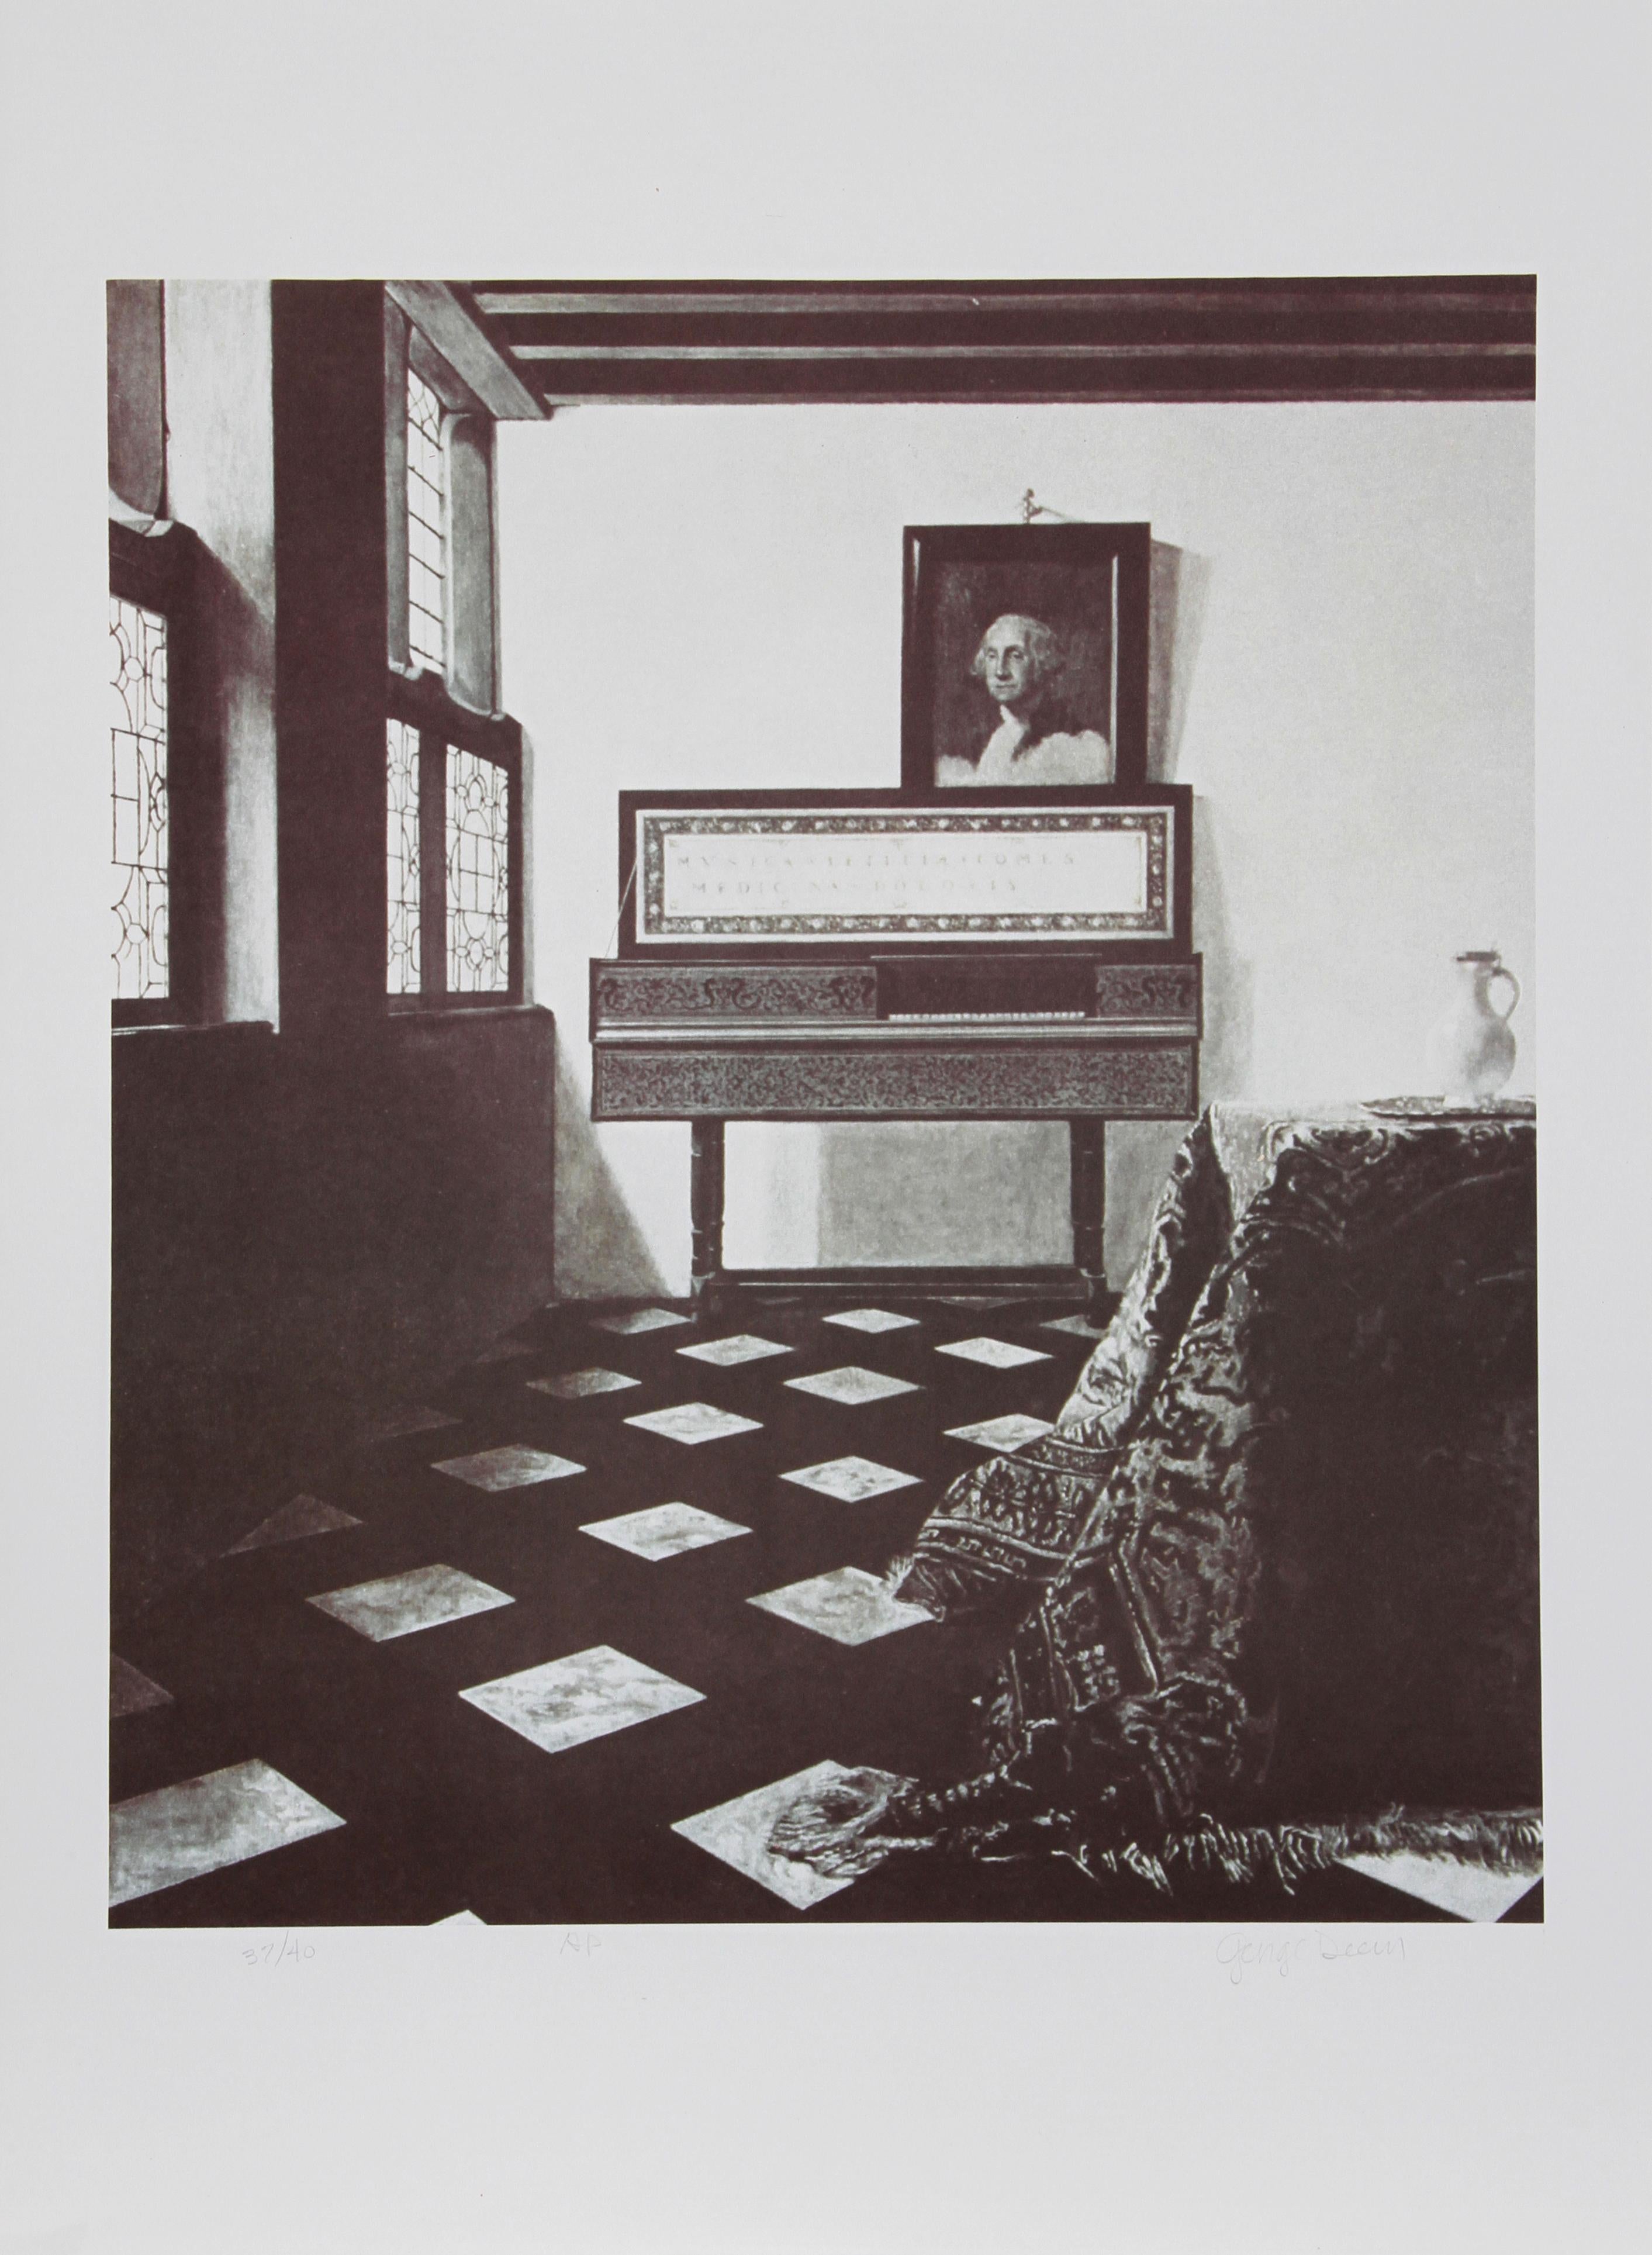 George Washington Vermeer, Vermeer
George Deem, Amerikaner (1932-2008)
Datum: 1978
Lithographie, mit Bleistift signiert und nummeriert
Ausgabe von AP 40
Bildgröße: 22 x 19 Zoll
Größe: 30 Zoll x 22 Zoll (76,2 cm x 55,88 cm)